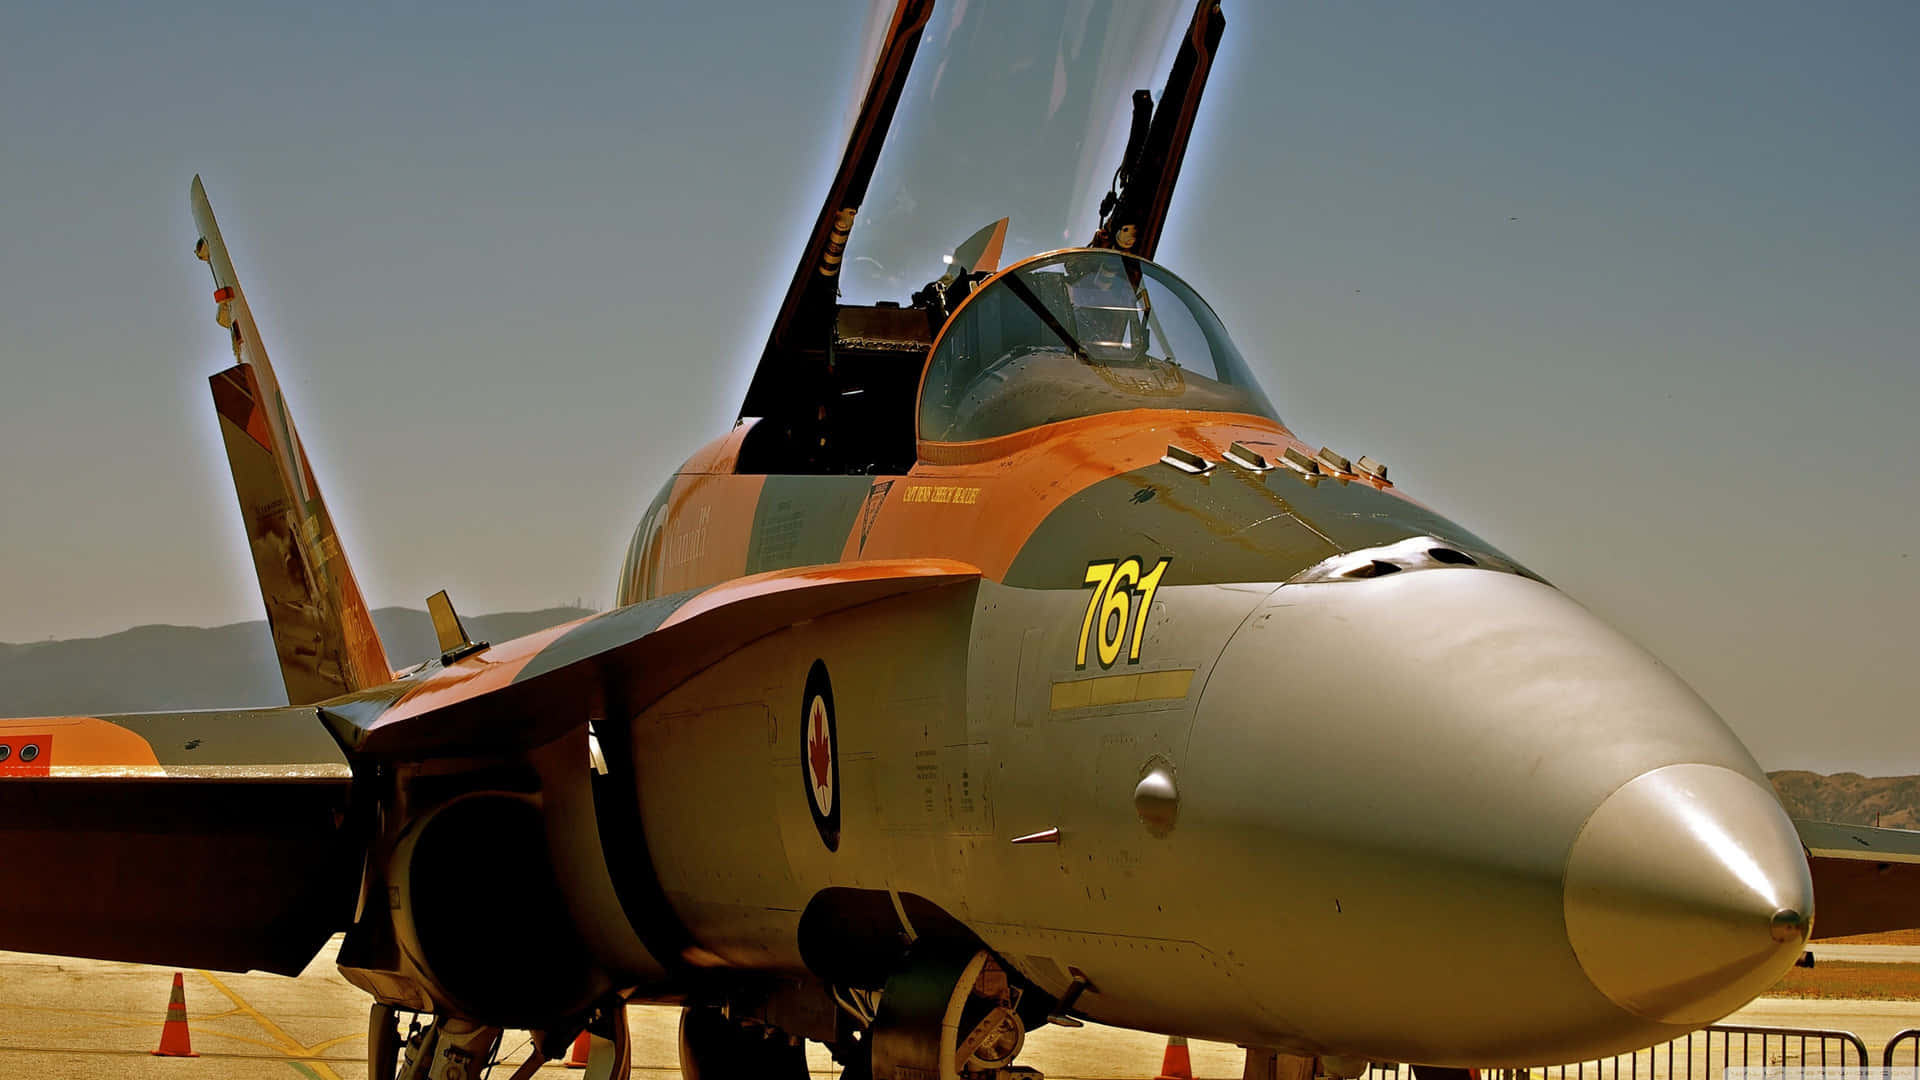 Top Gun Vf-74 Tomcat Jet Fighter Background